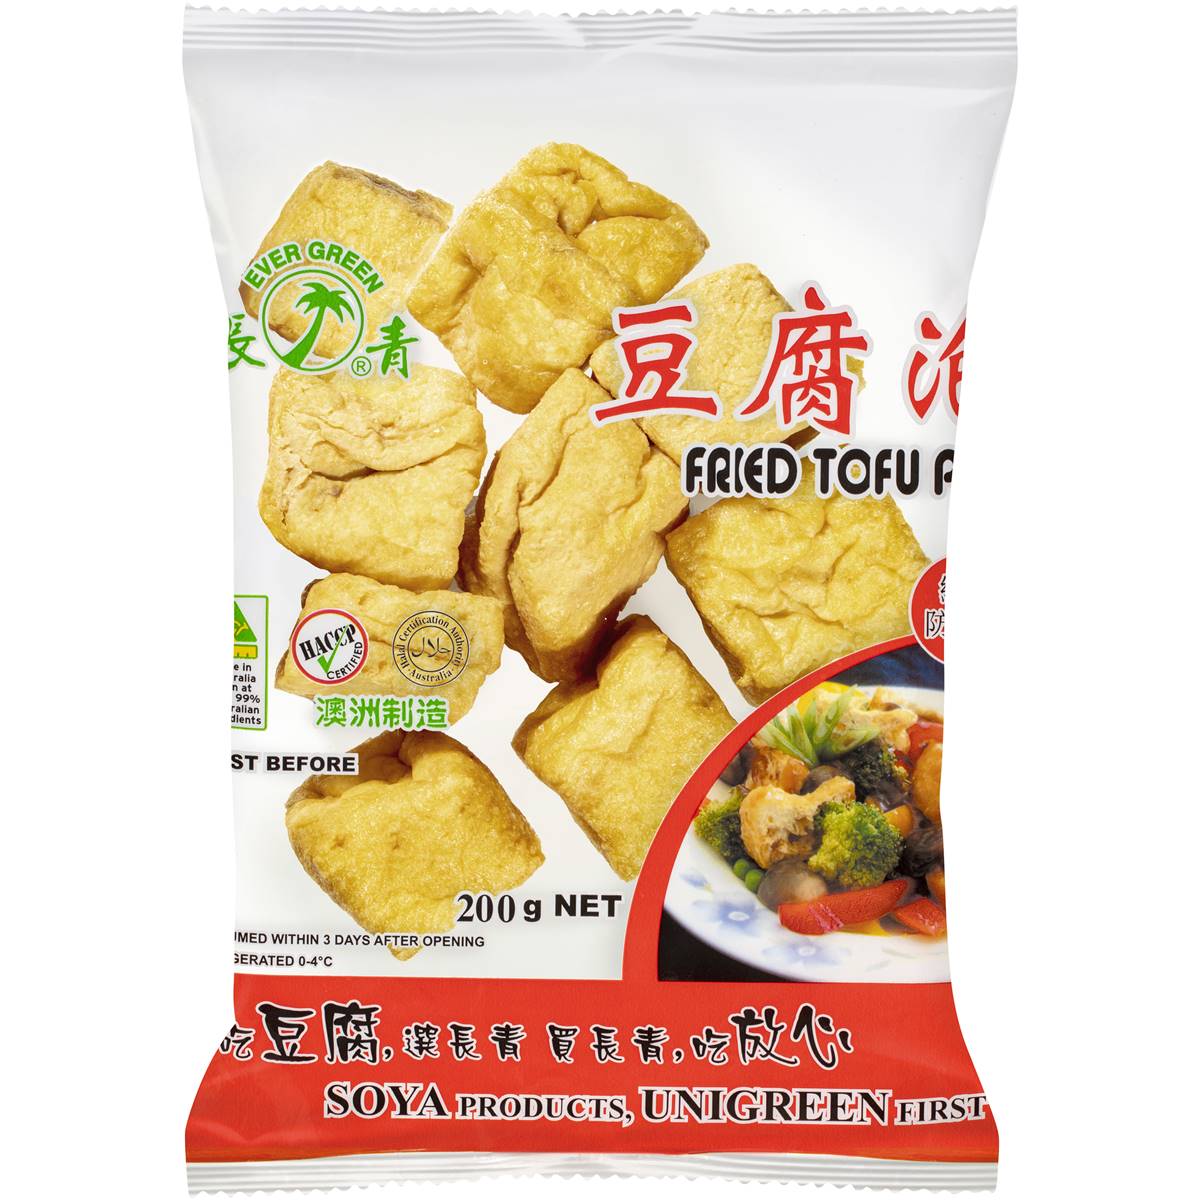 Calories in Evergreen Fried Tofu Puff